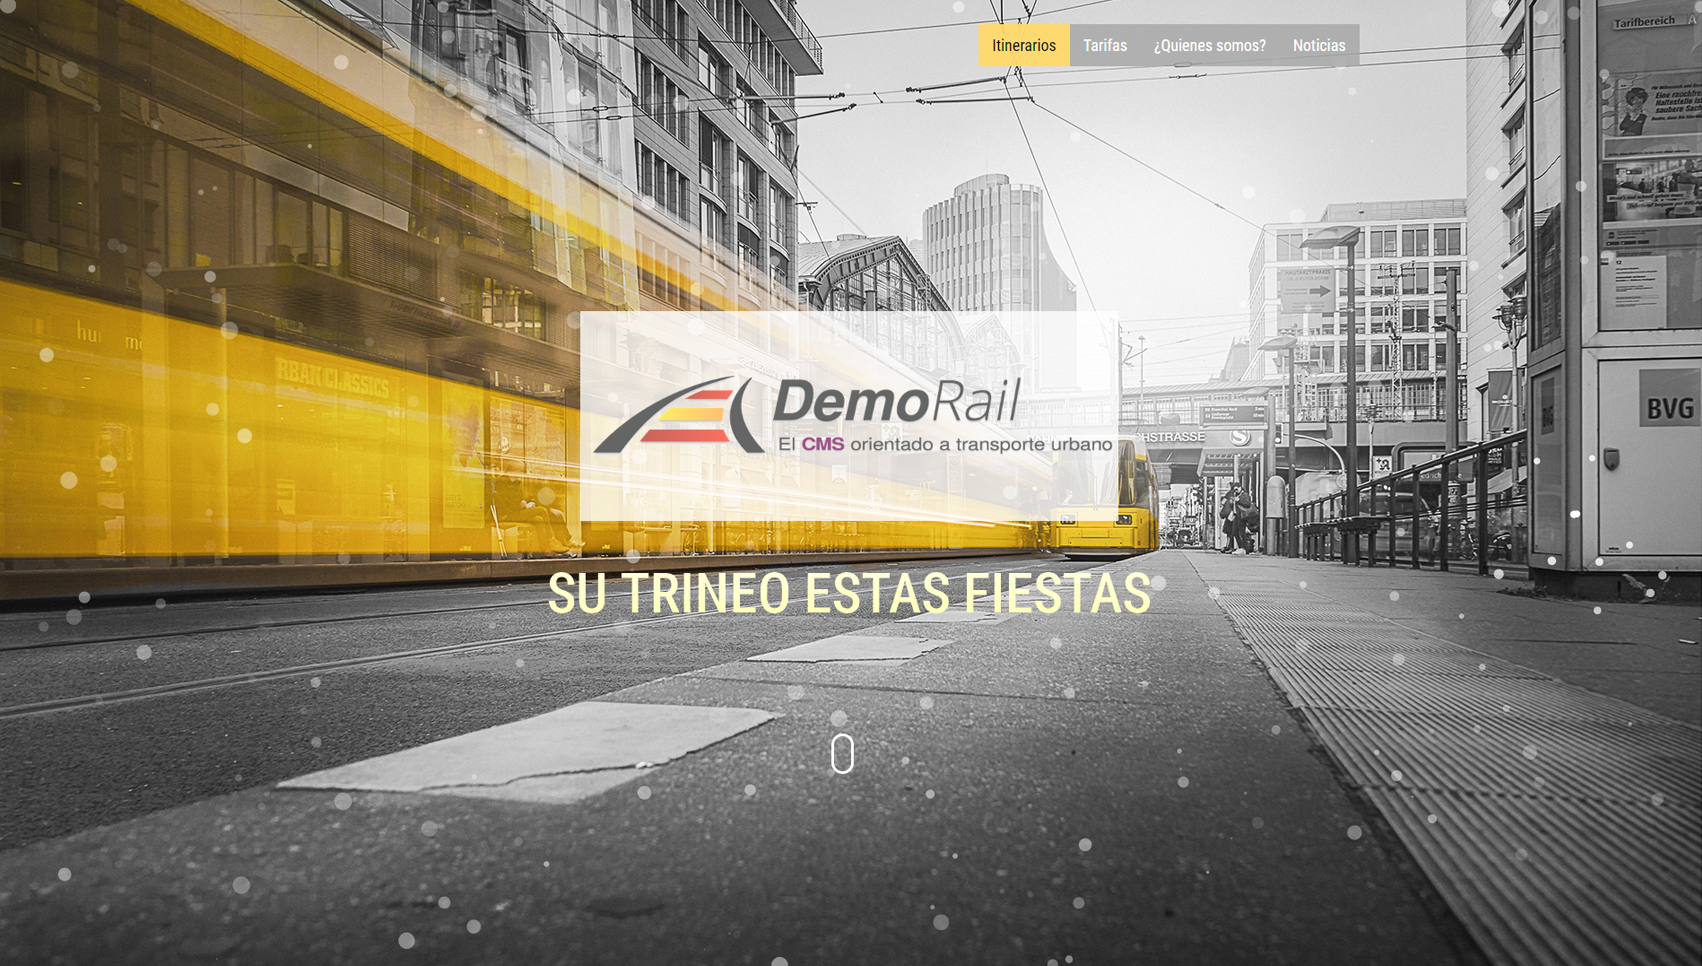 Demorail: Un Gestor de Contenido orientado a transporte urbano